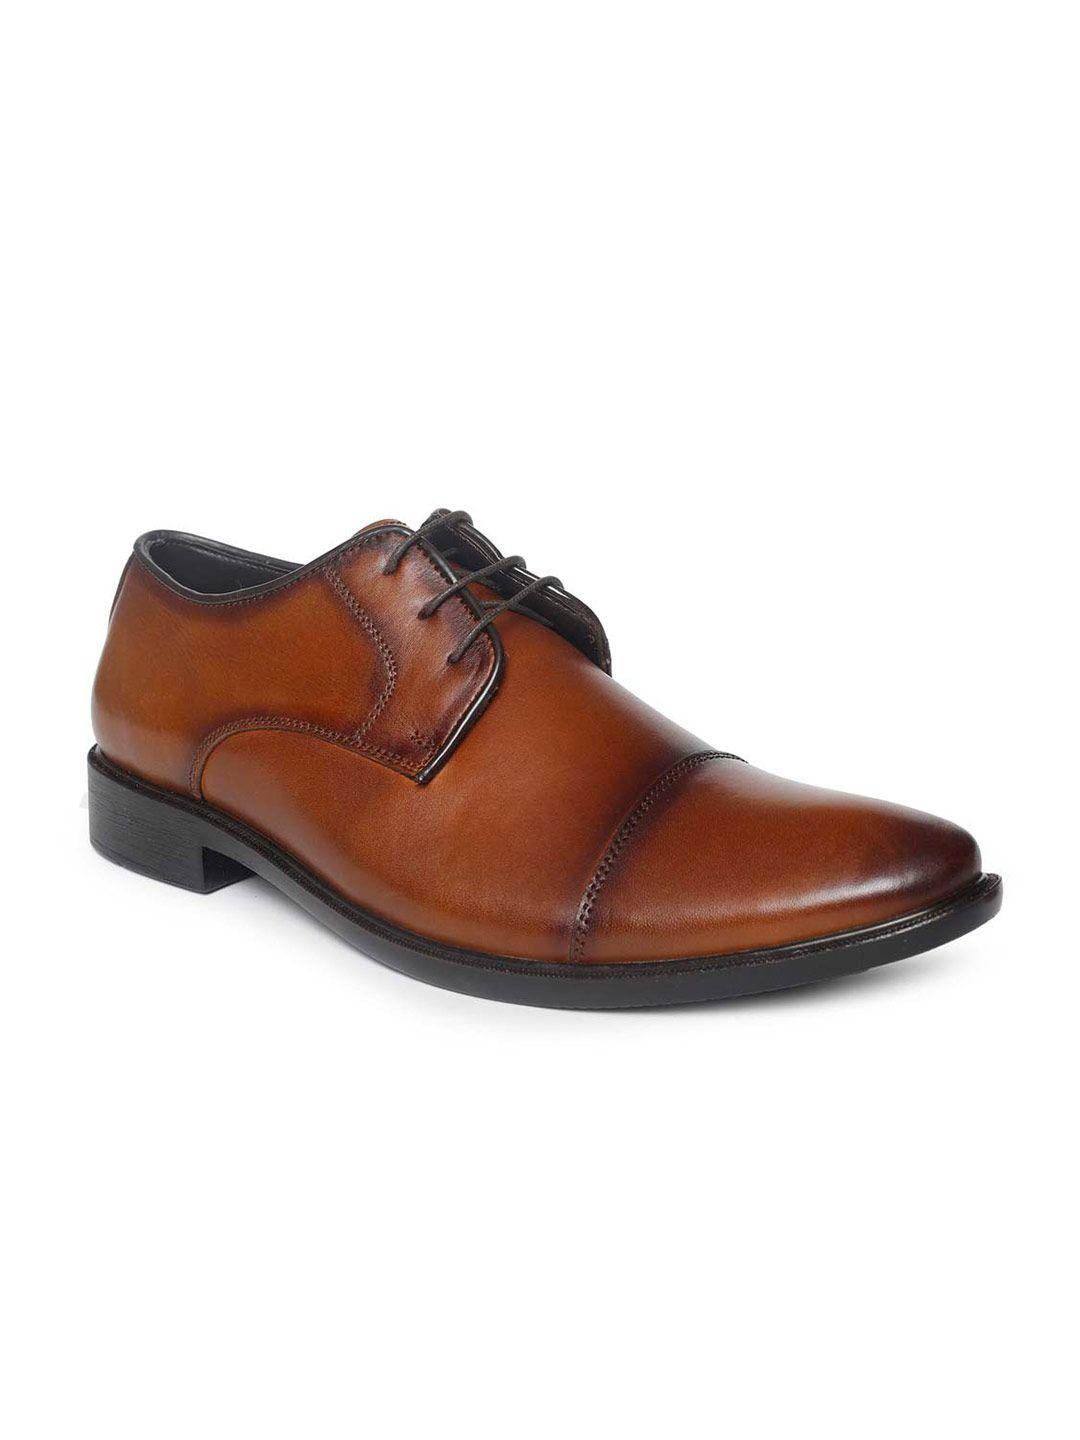 paragon-men-brown-solid-leather-formal-derbys